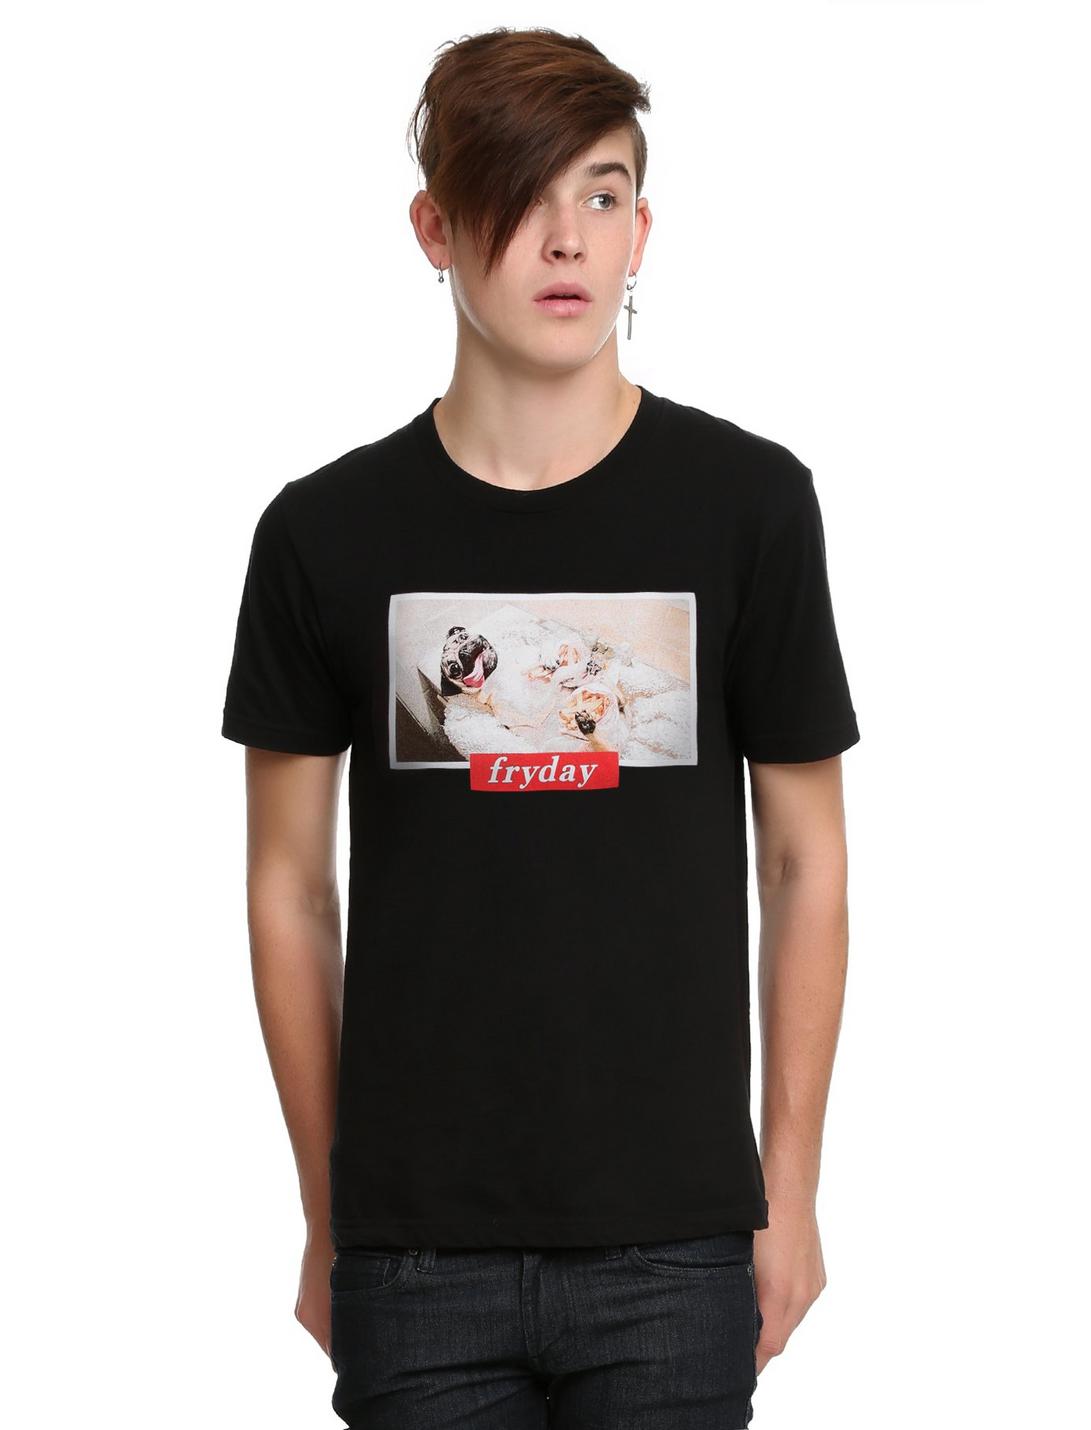 Doug The Pug Fryday T-Shirt, BLACK, hi-res